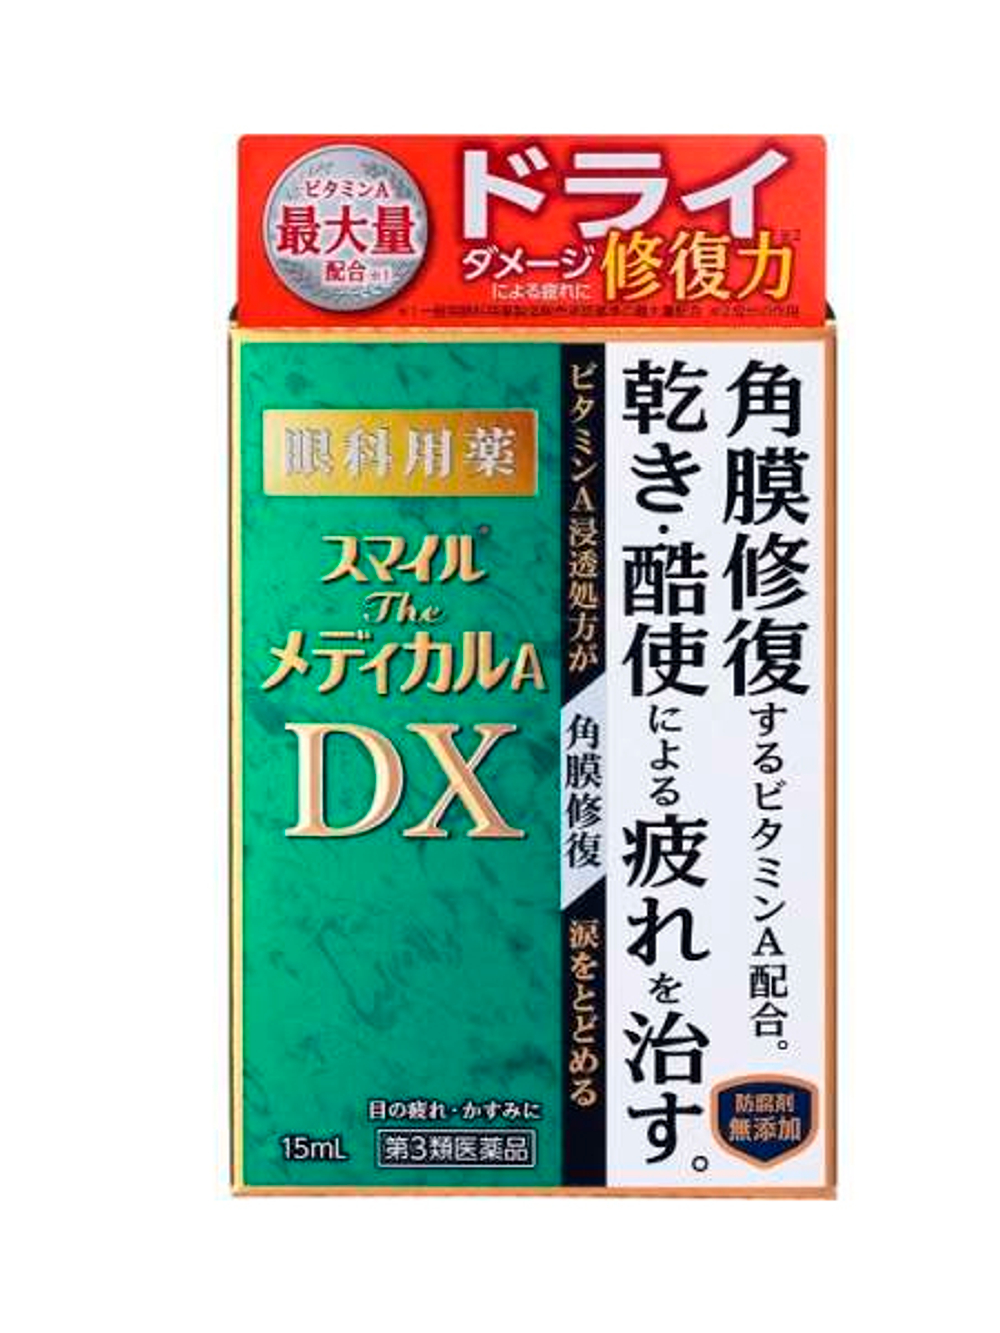 Lion Японские капли для глаз от сухости, усталости, покраснения Smile Medical A DX